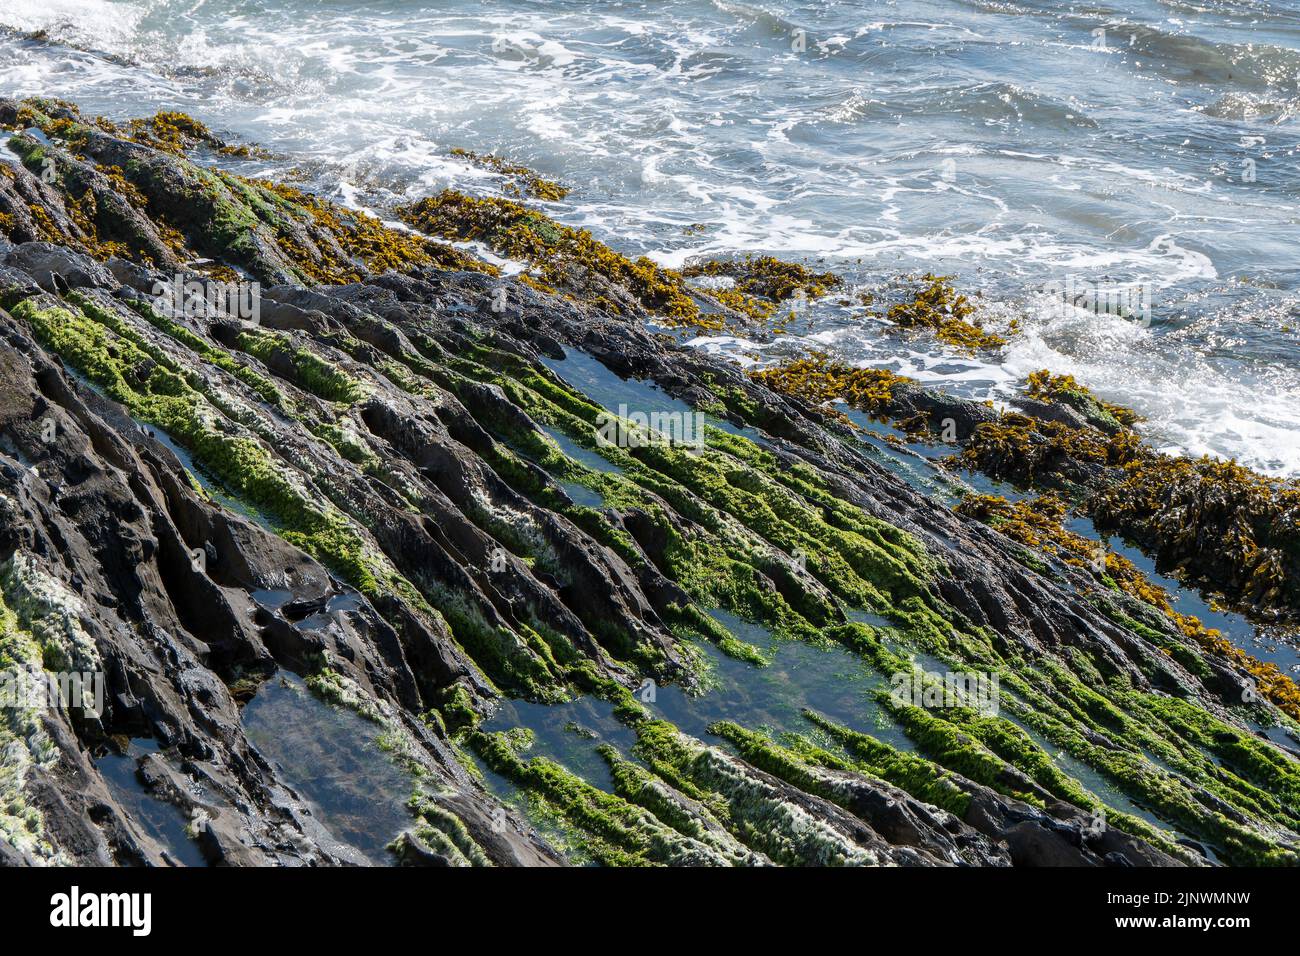 Foam on the waves, coastal rocks. Seaweed on rocks, landscape. Green moss on rock near body of water Stock Photo